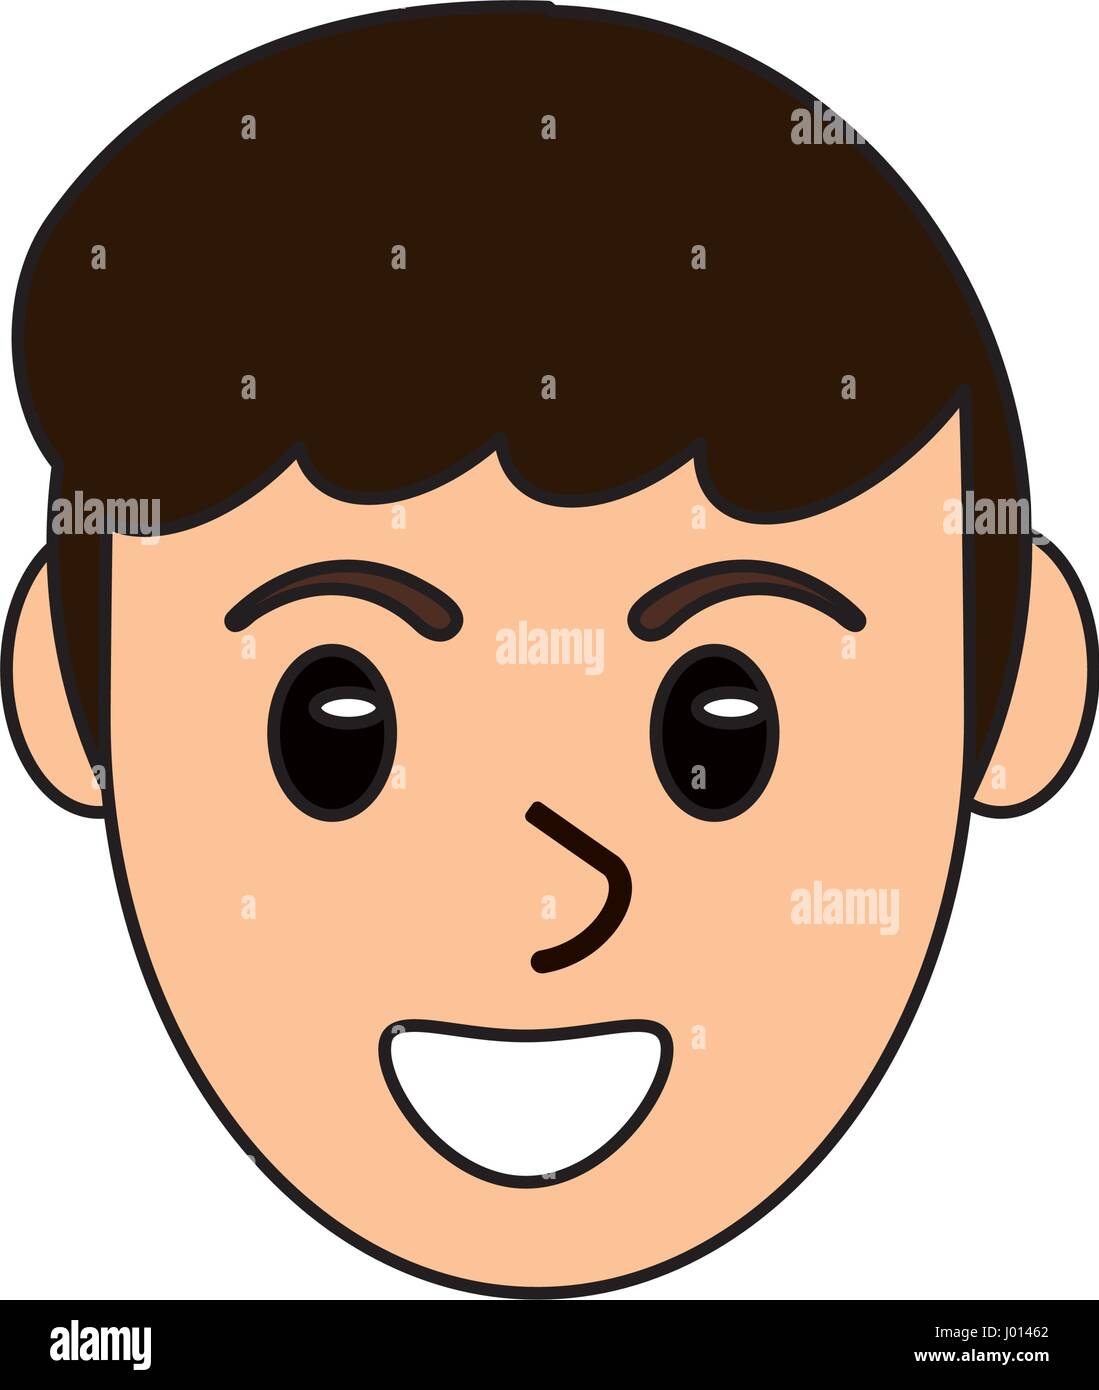 cartoon head face man male design Stock Vector Image & Art - Alamy